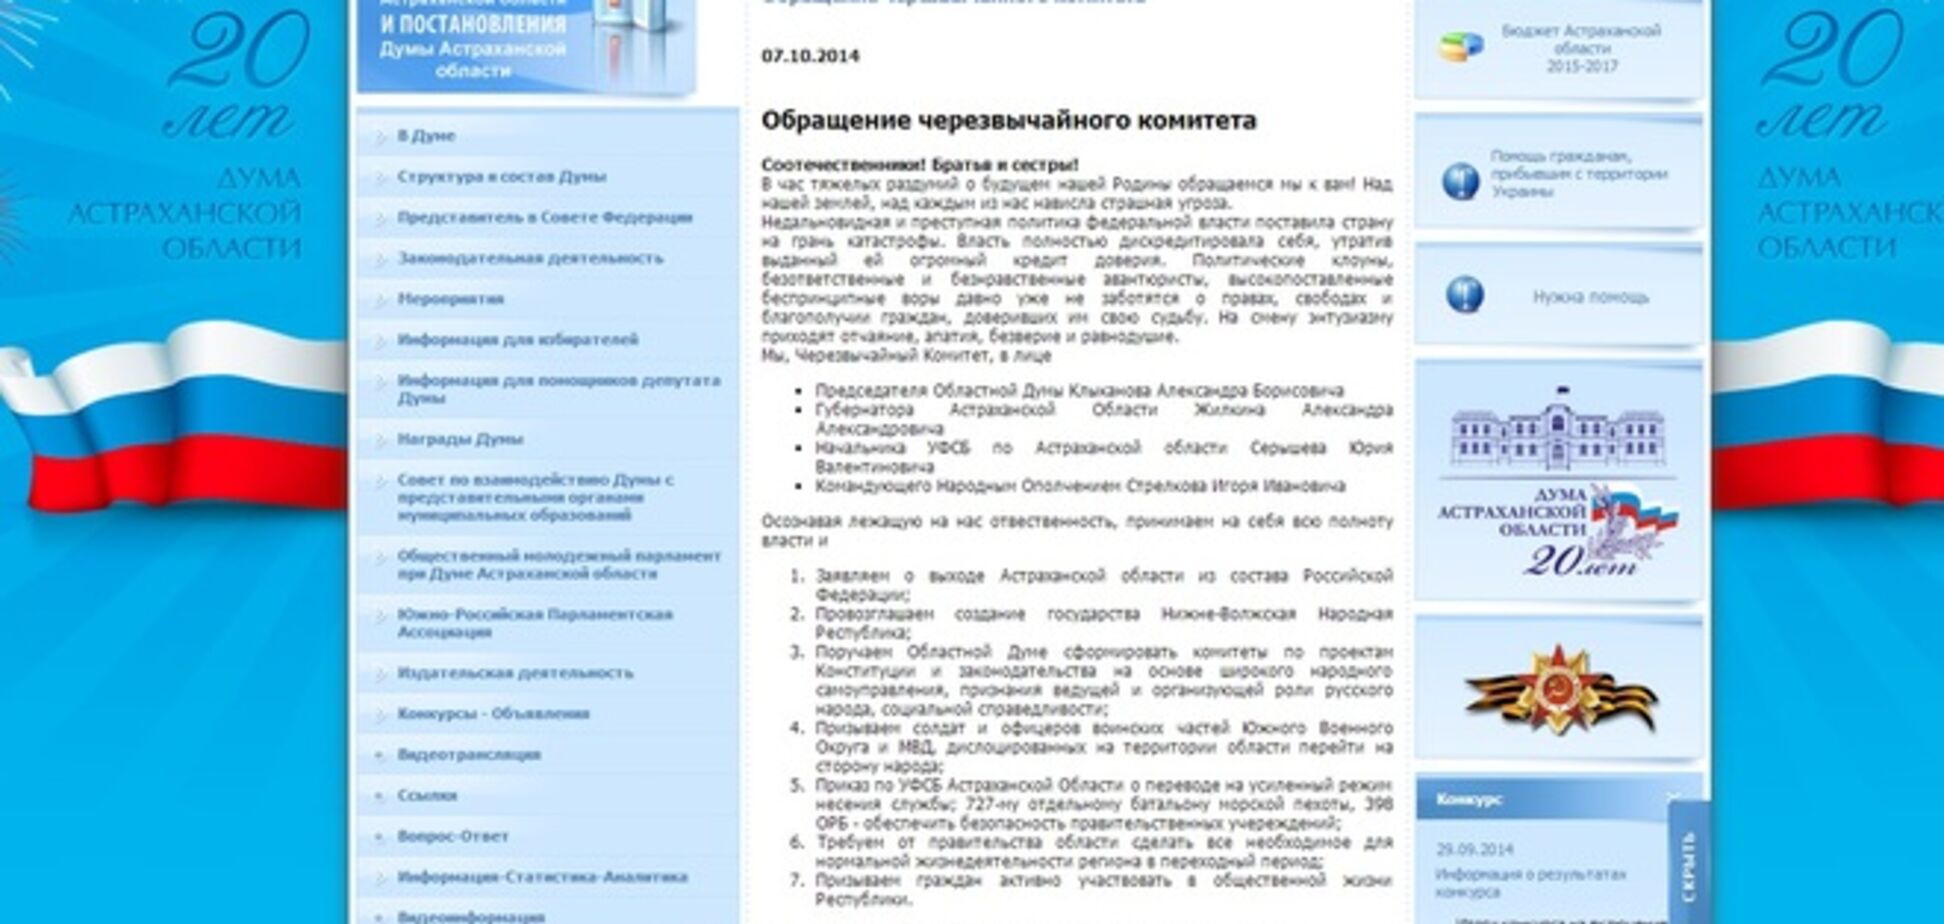 На сайте Астраханской областной думы заявили о выходе области из состава России